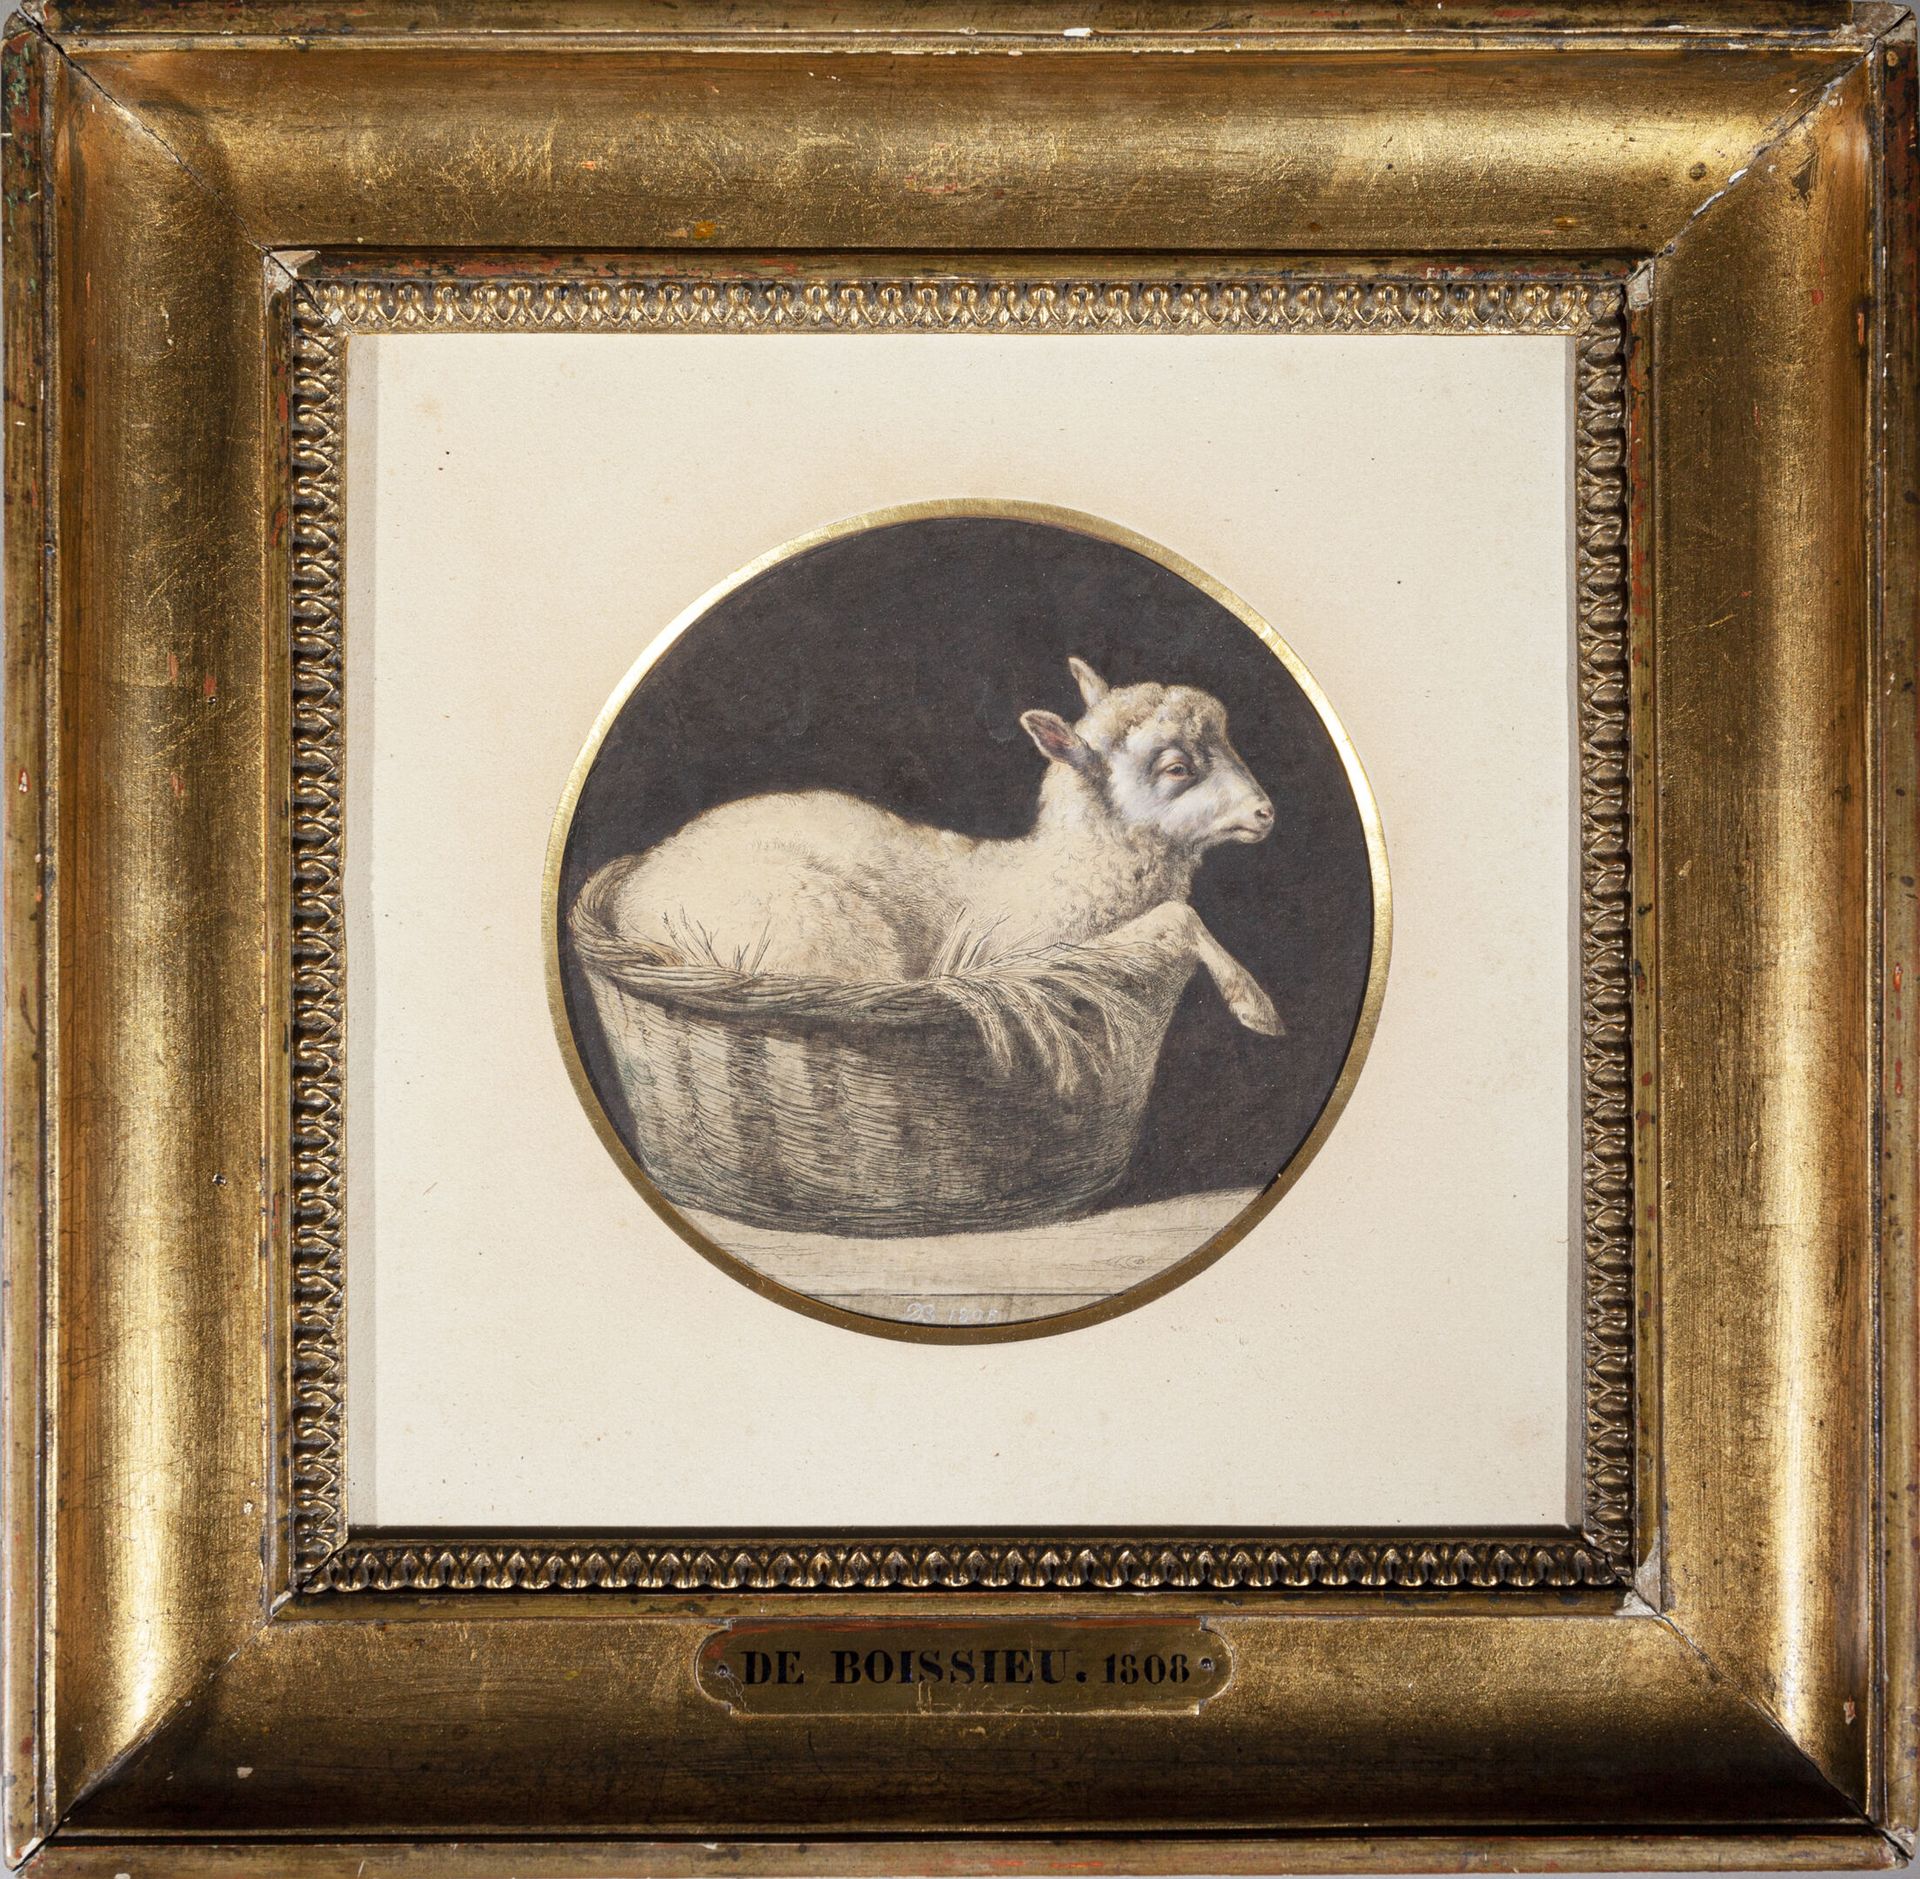 Null Jean-Jacques de BOISSIEU (1736-1810)
The lamb in its basket. 1808 
Reprise &hellip;